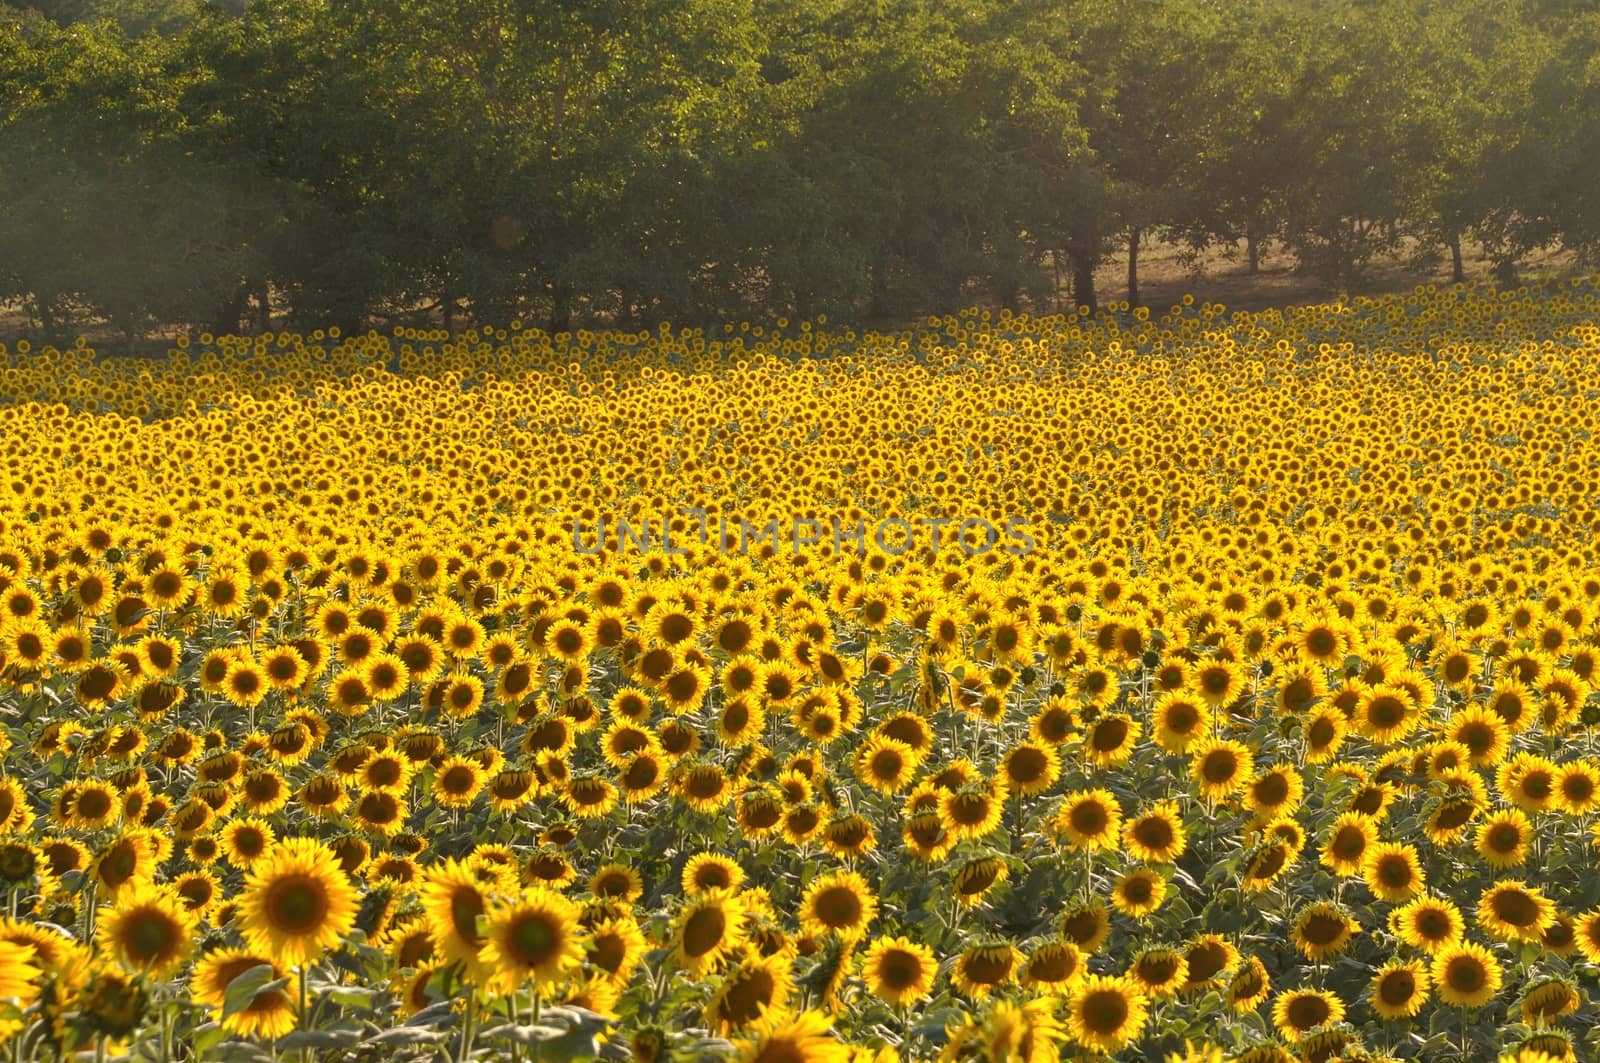 Domme, sun flower field 